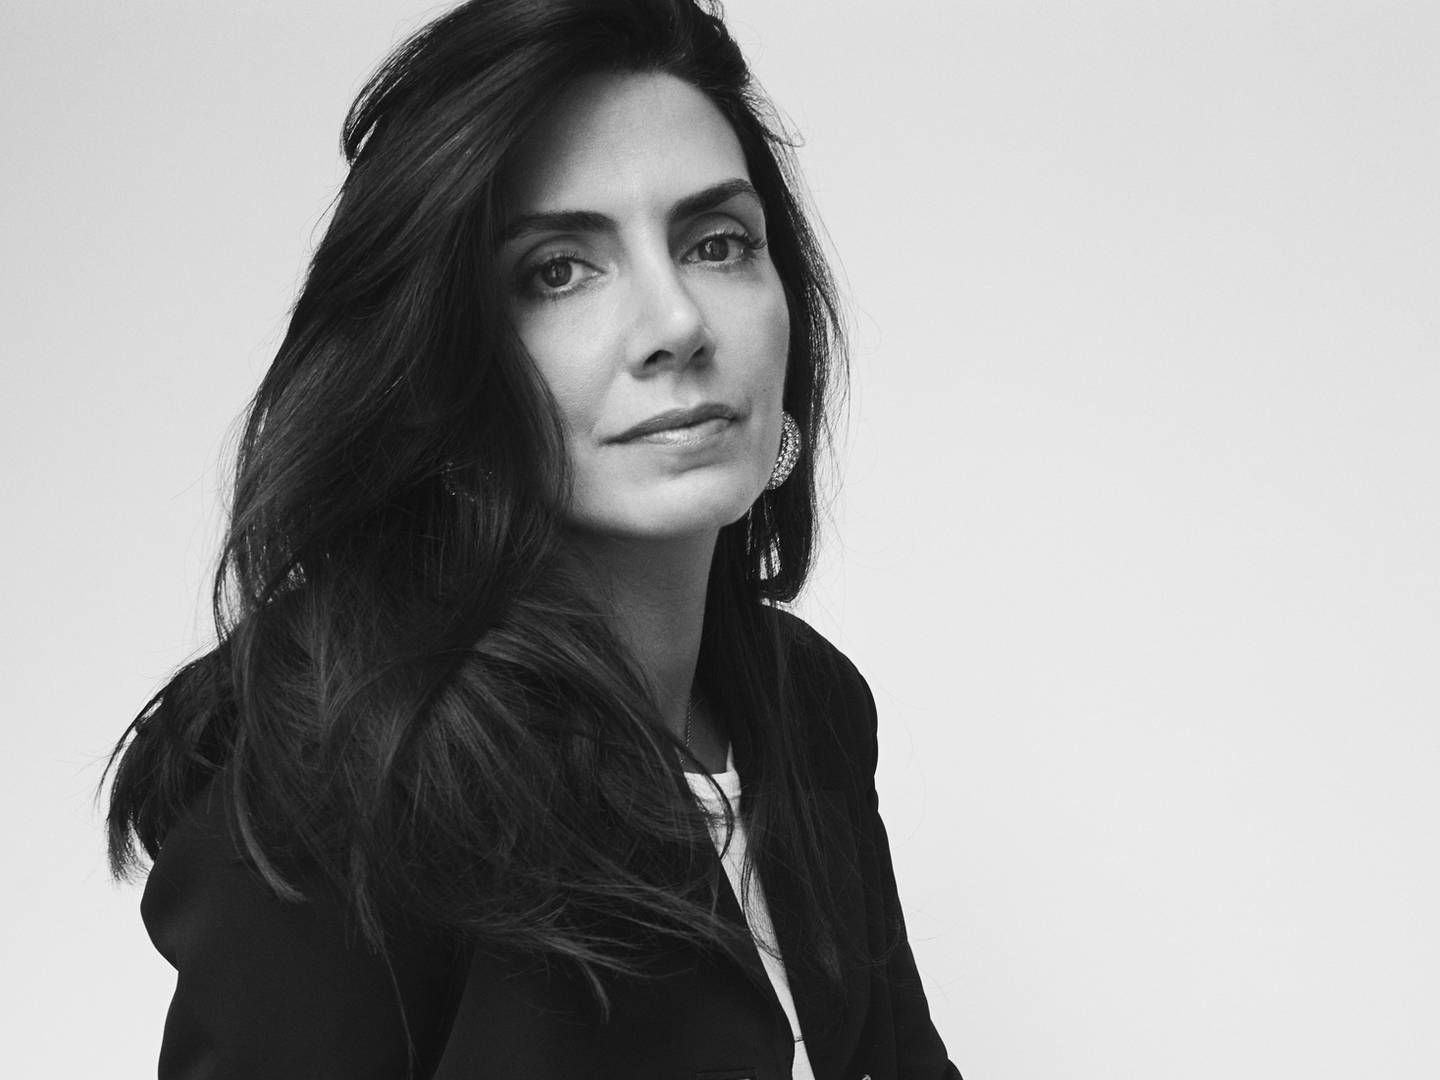 Det danske modebrand hentede i april Laura du Rusquec ind som ny direktør. Hun kommer til at lede Ganni fra modehusets kontor i Paris. | Photo: Ganni